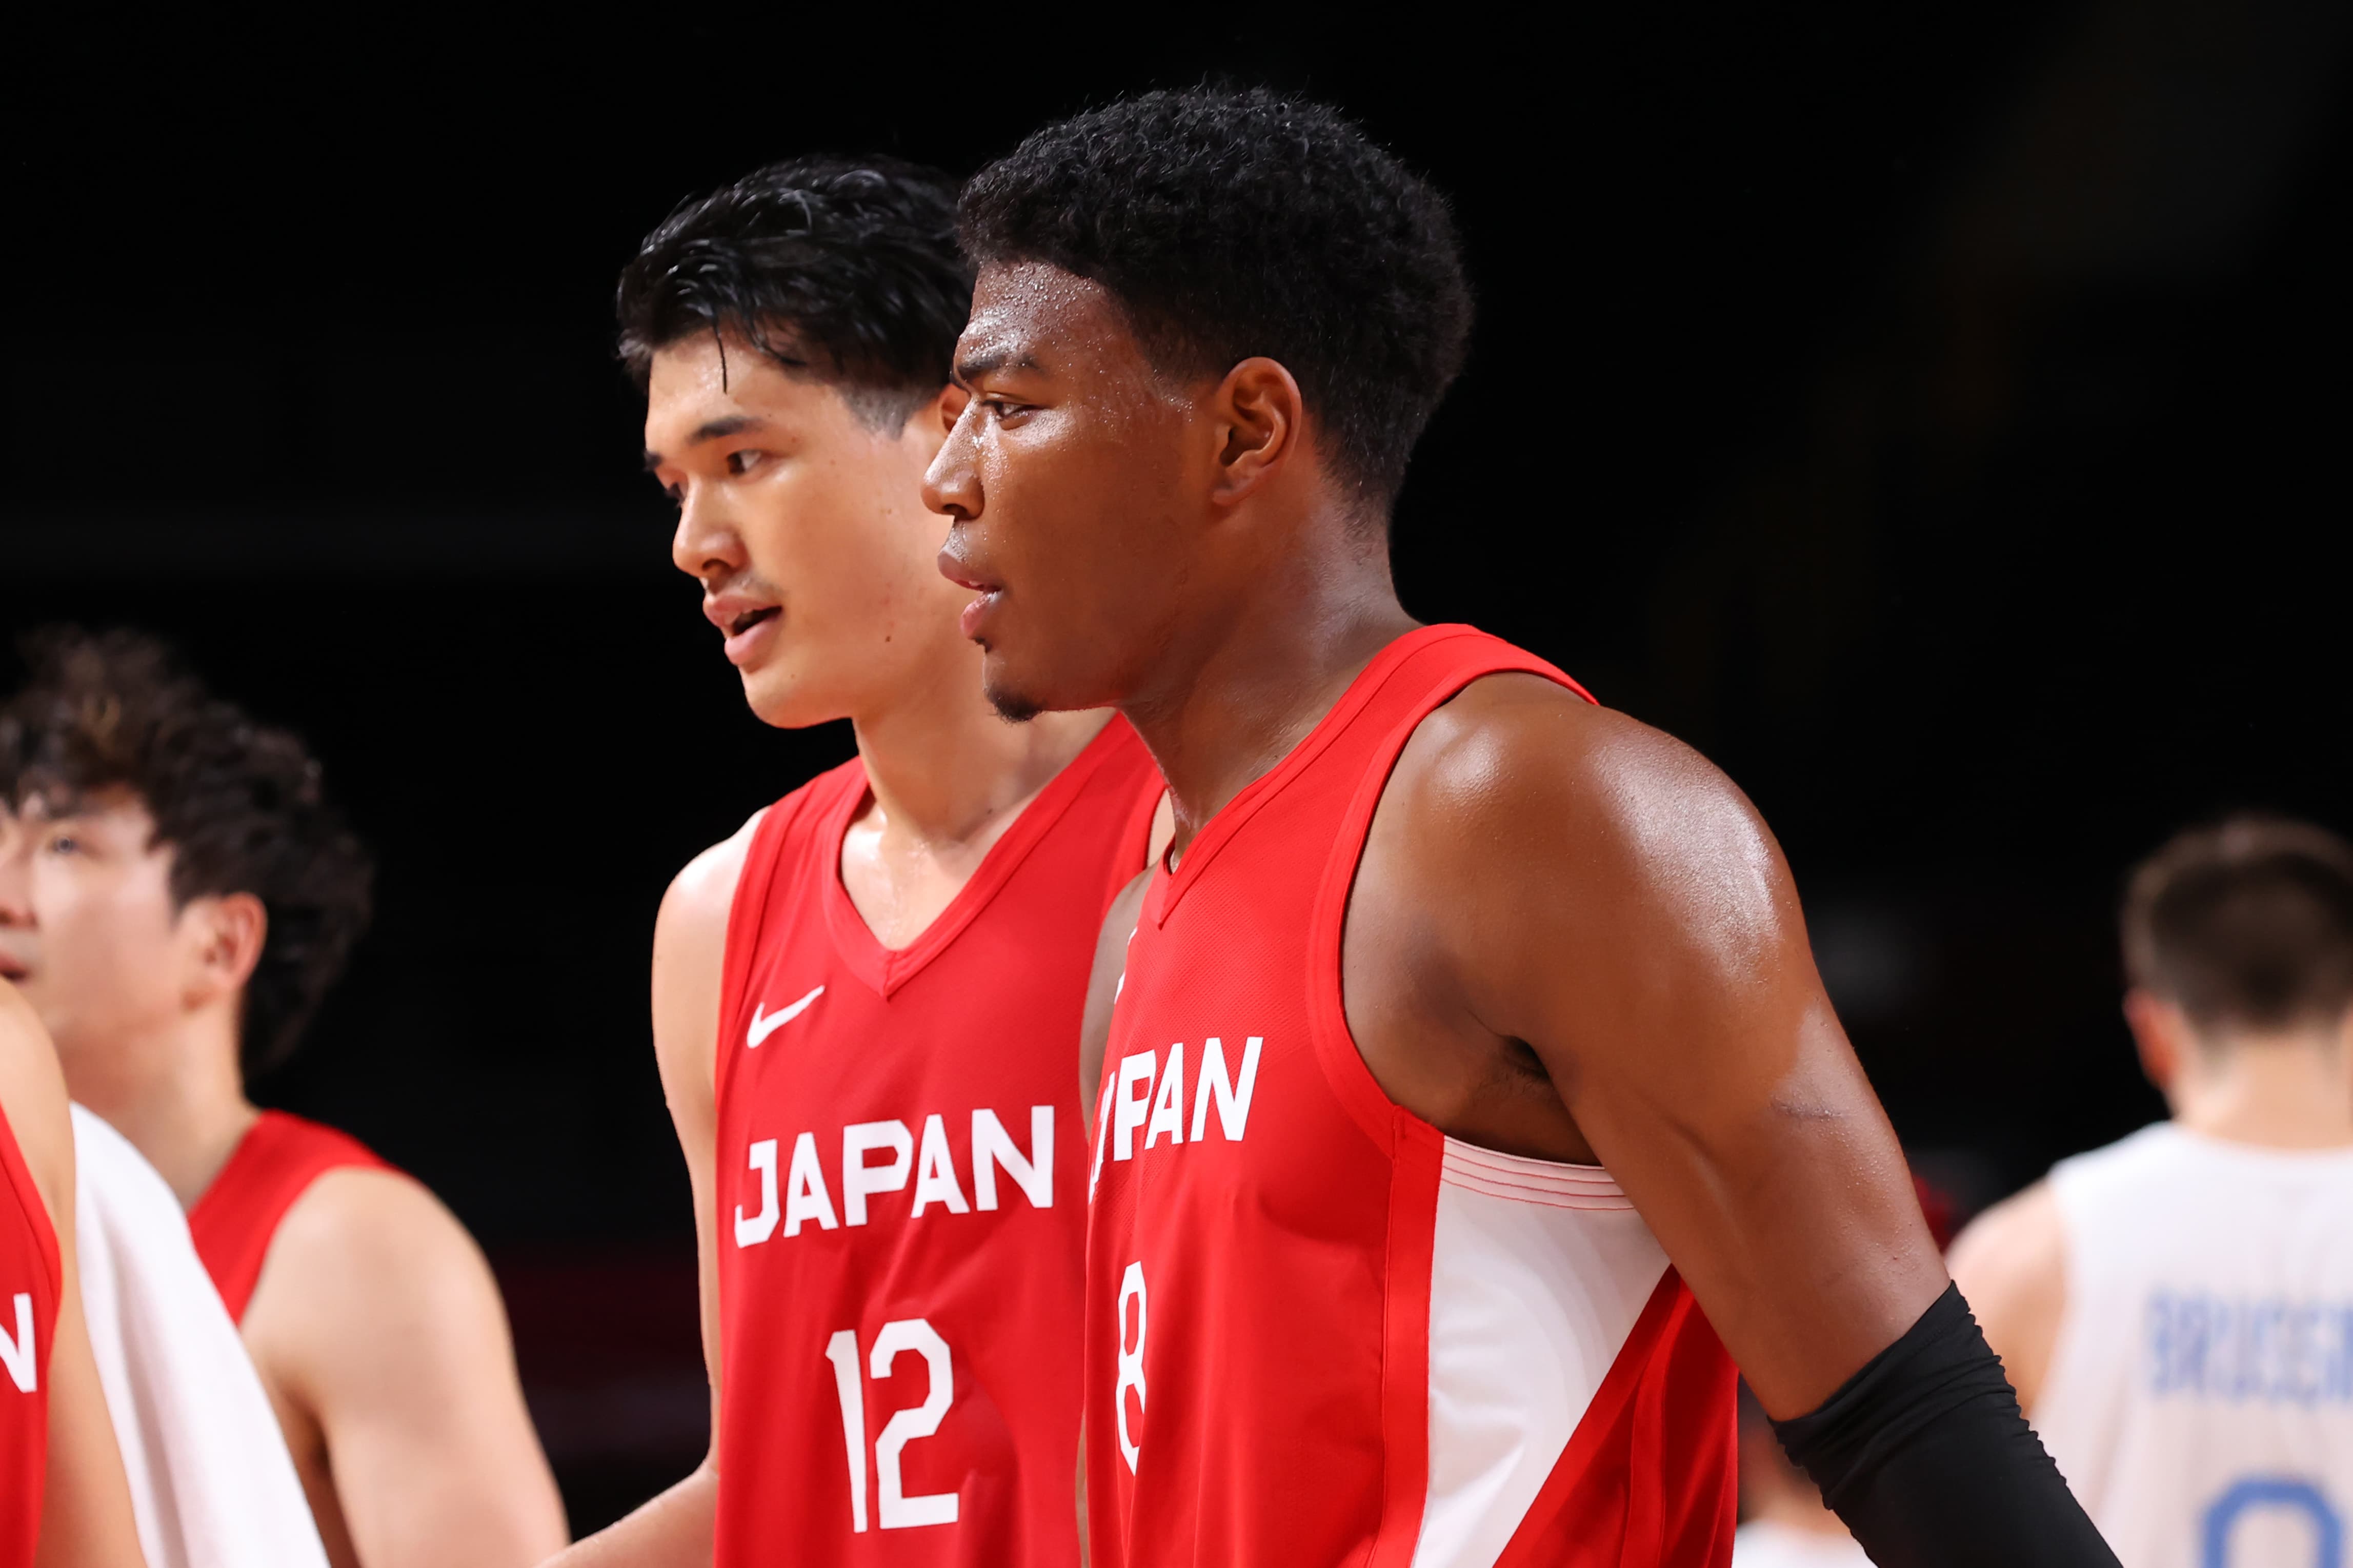 NBAプレイヤーである八村塁選手と渡邊雄太選手が東京2020大会に出場